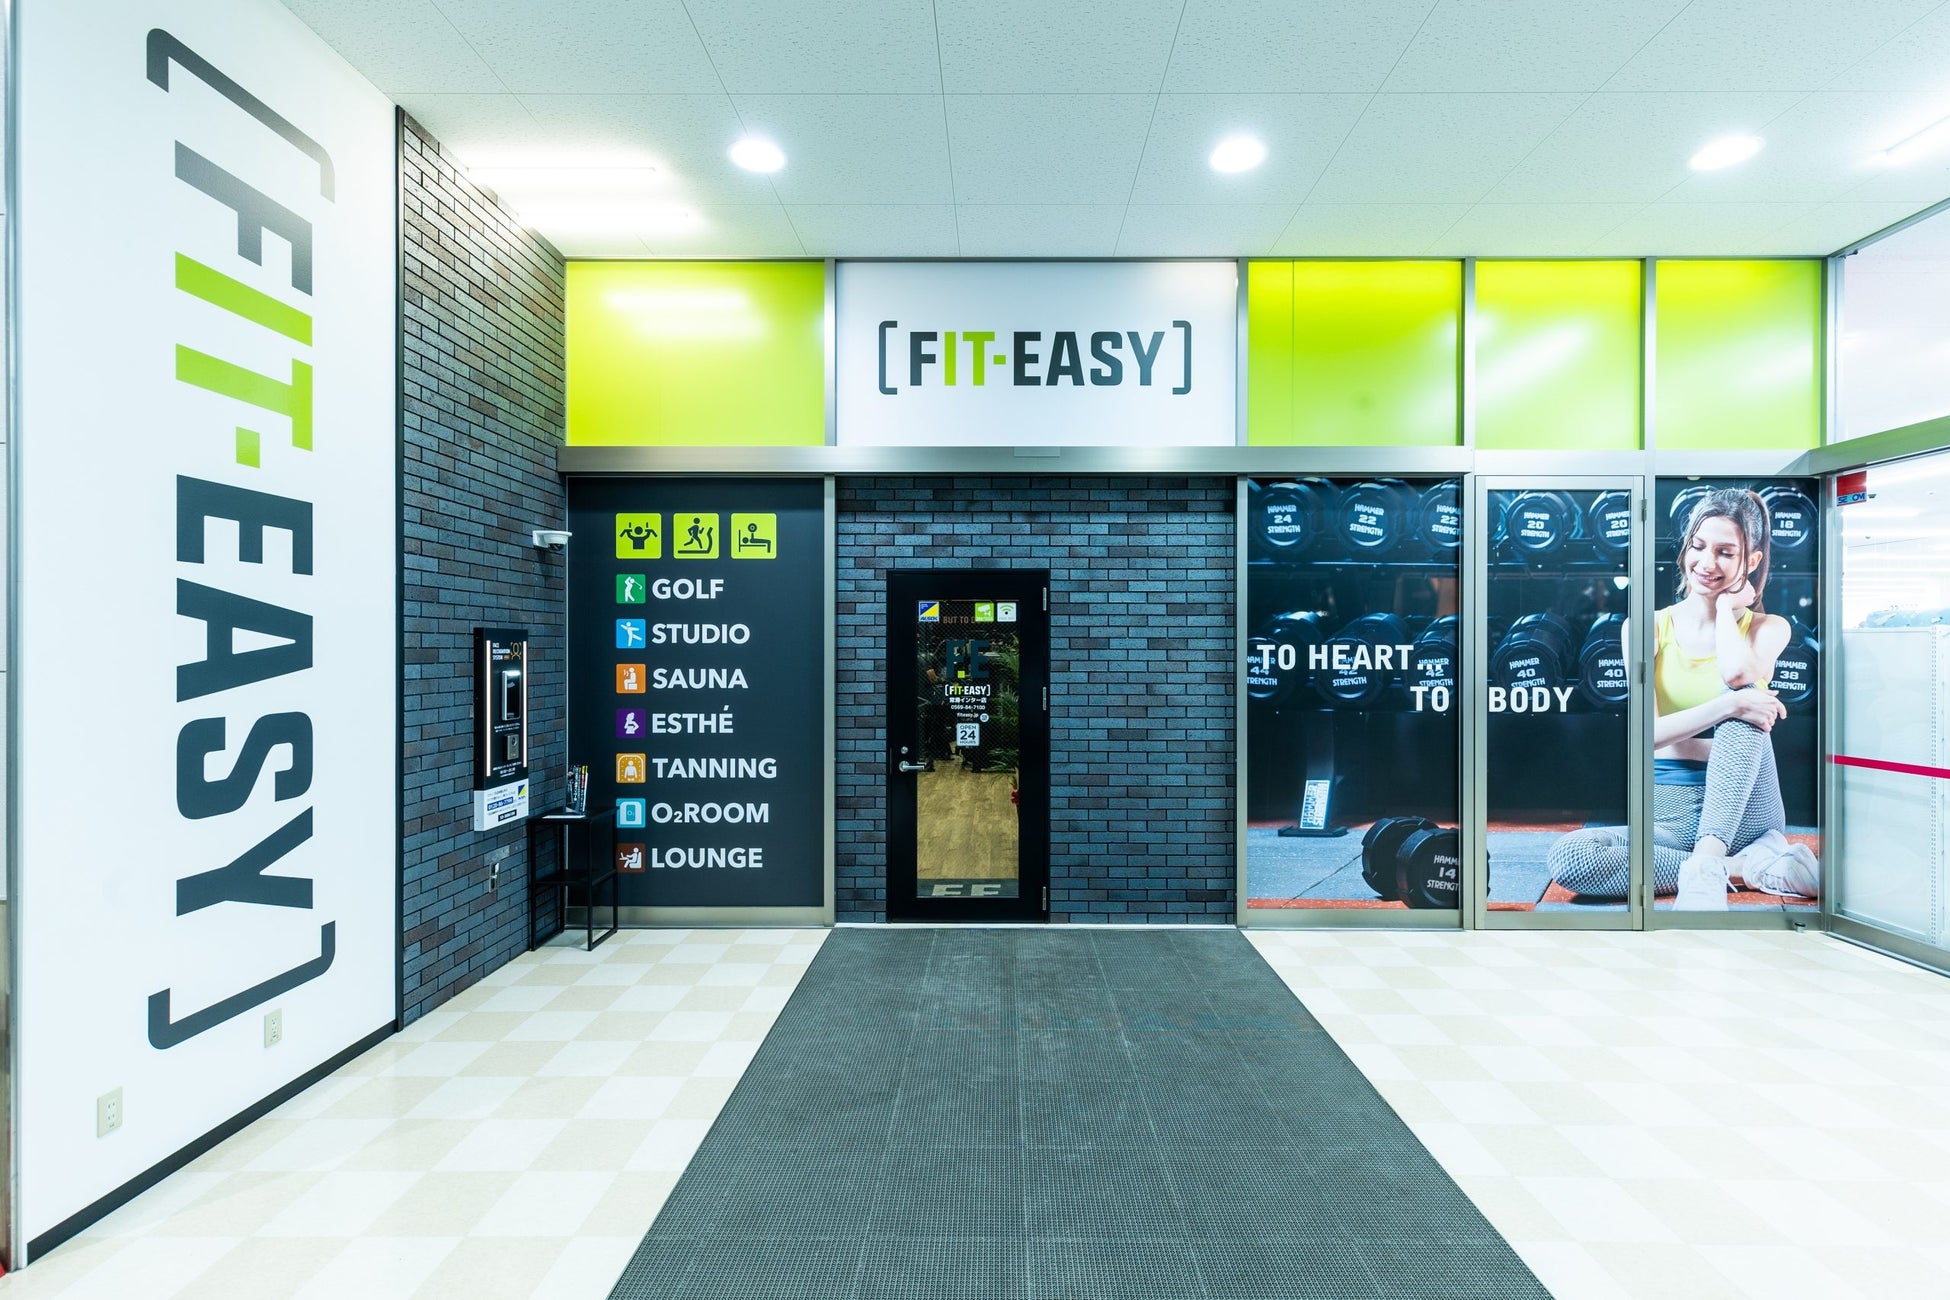 【グランドオープン情報】アミューズメントフィットネスクラブ FIT-EASY イオンモール四日市北店がグランドオープンしました！